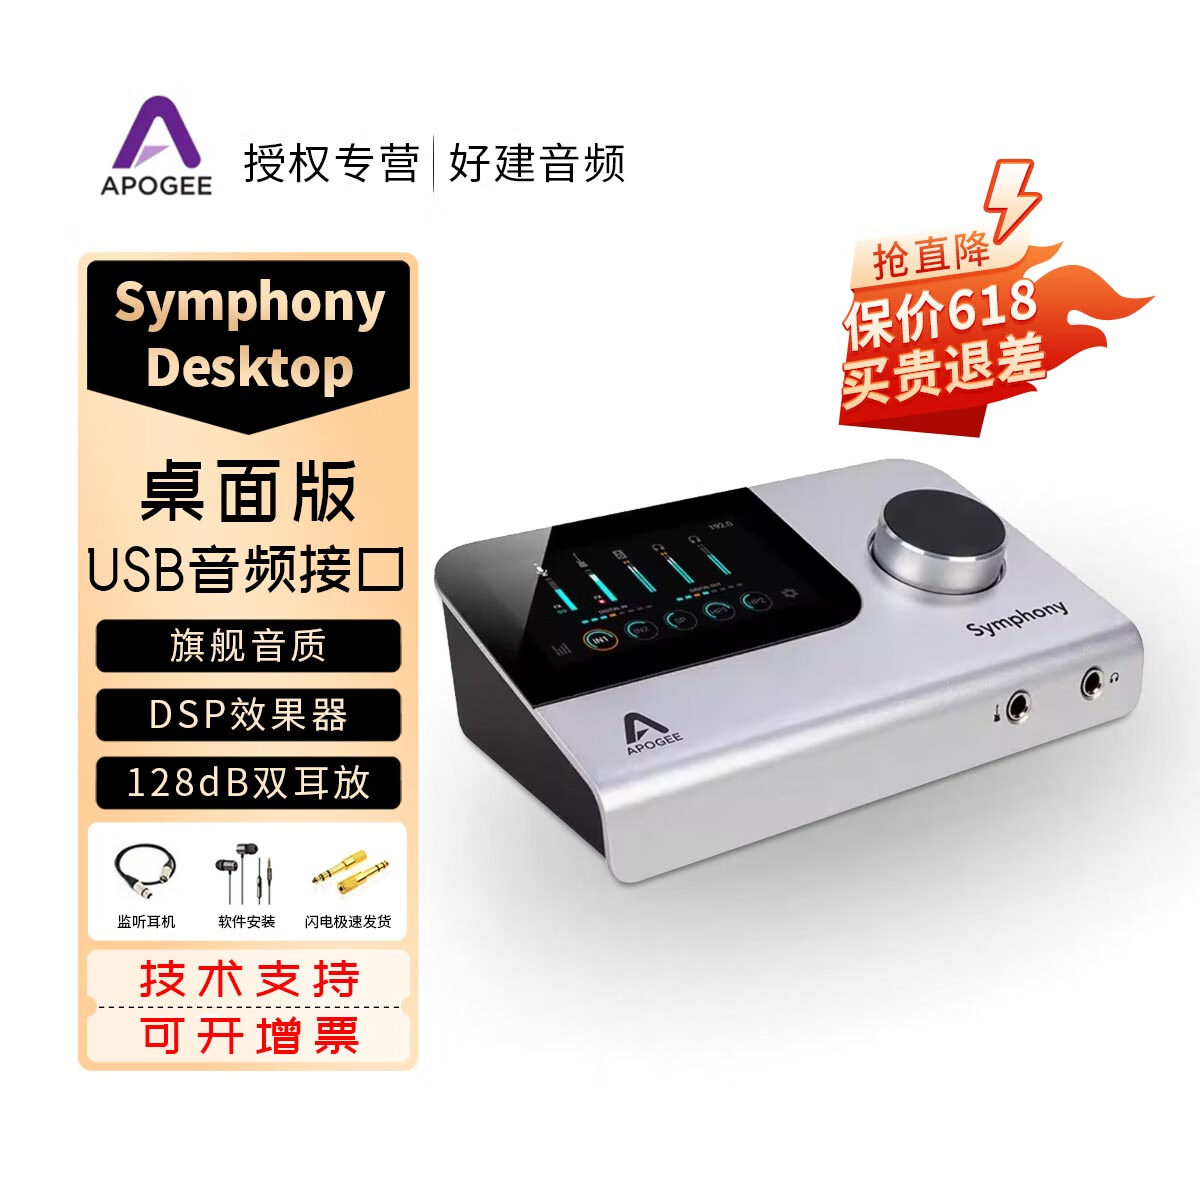 APOGEE Symphony Desktop 桌面版 USB音频接口 声卡 录音编曲混音 国行 Symphony Desktop 官方标配